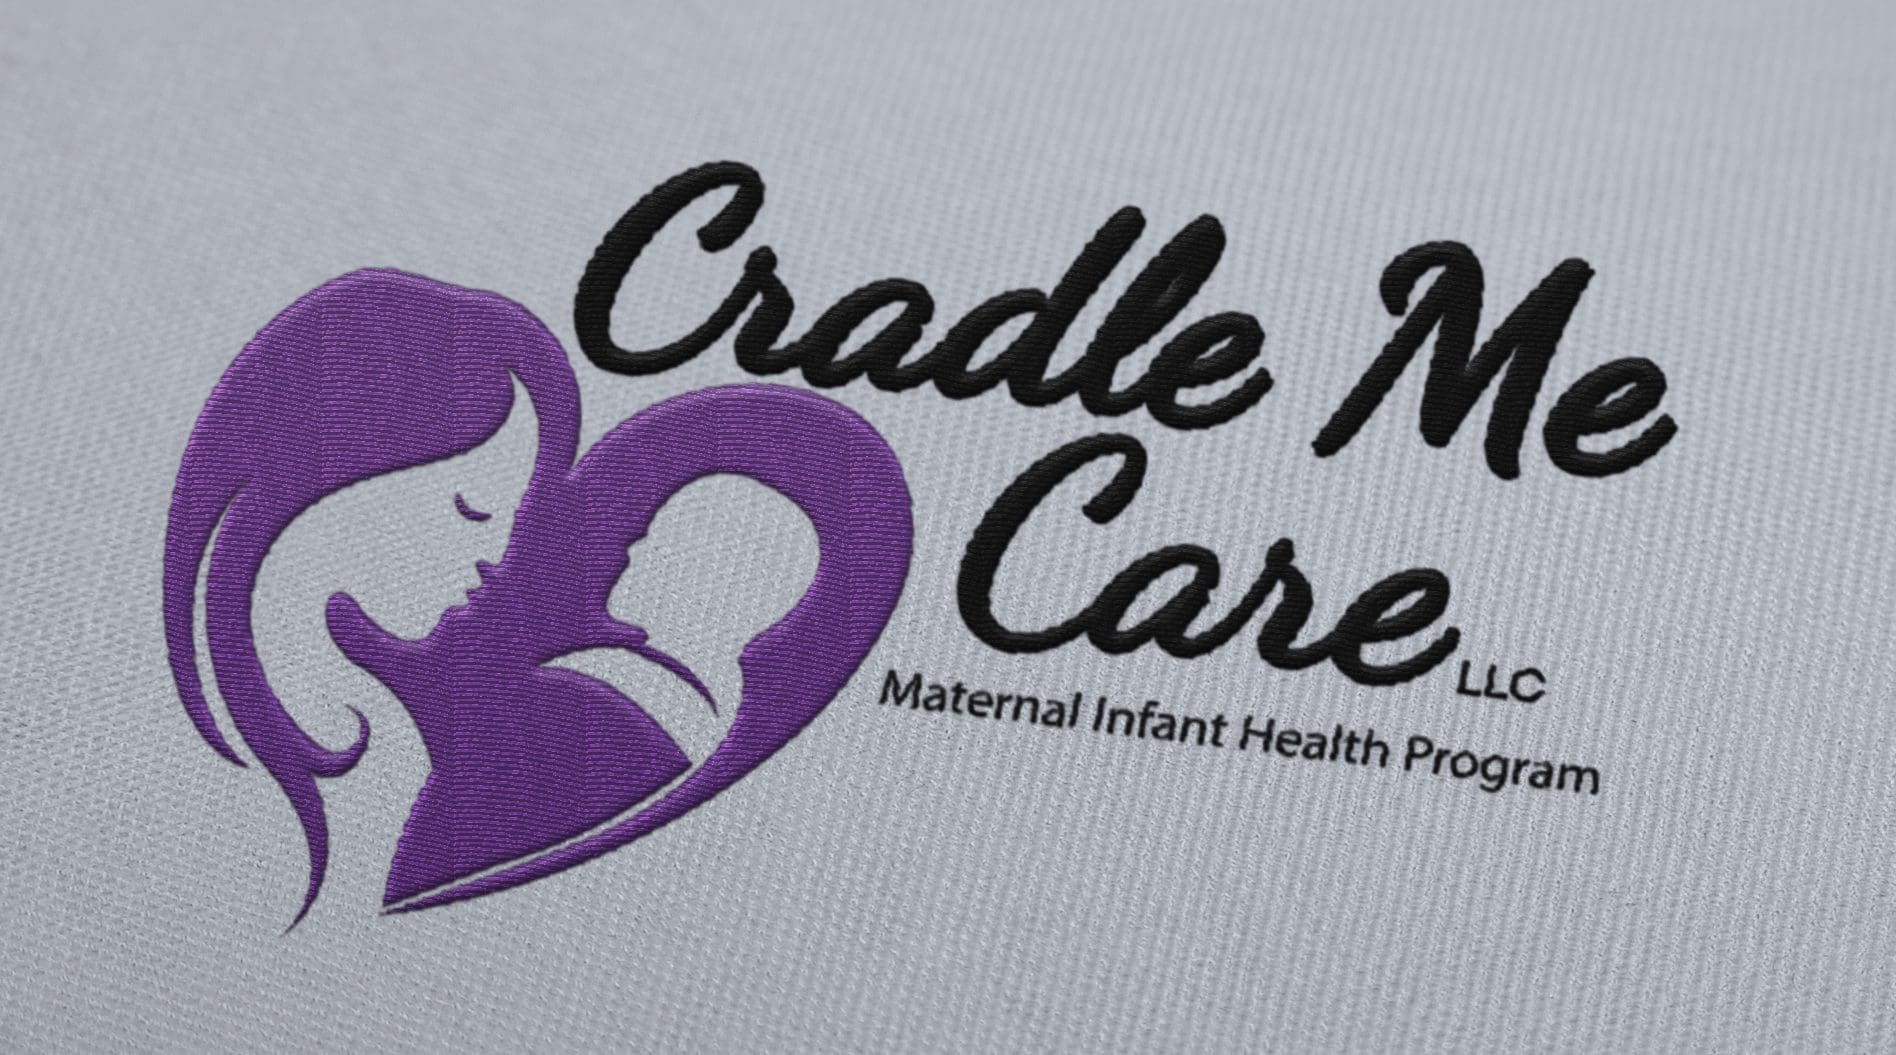 Cradle Me Care - Logo